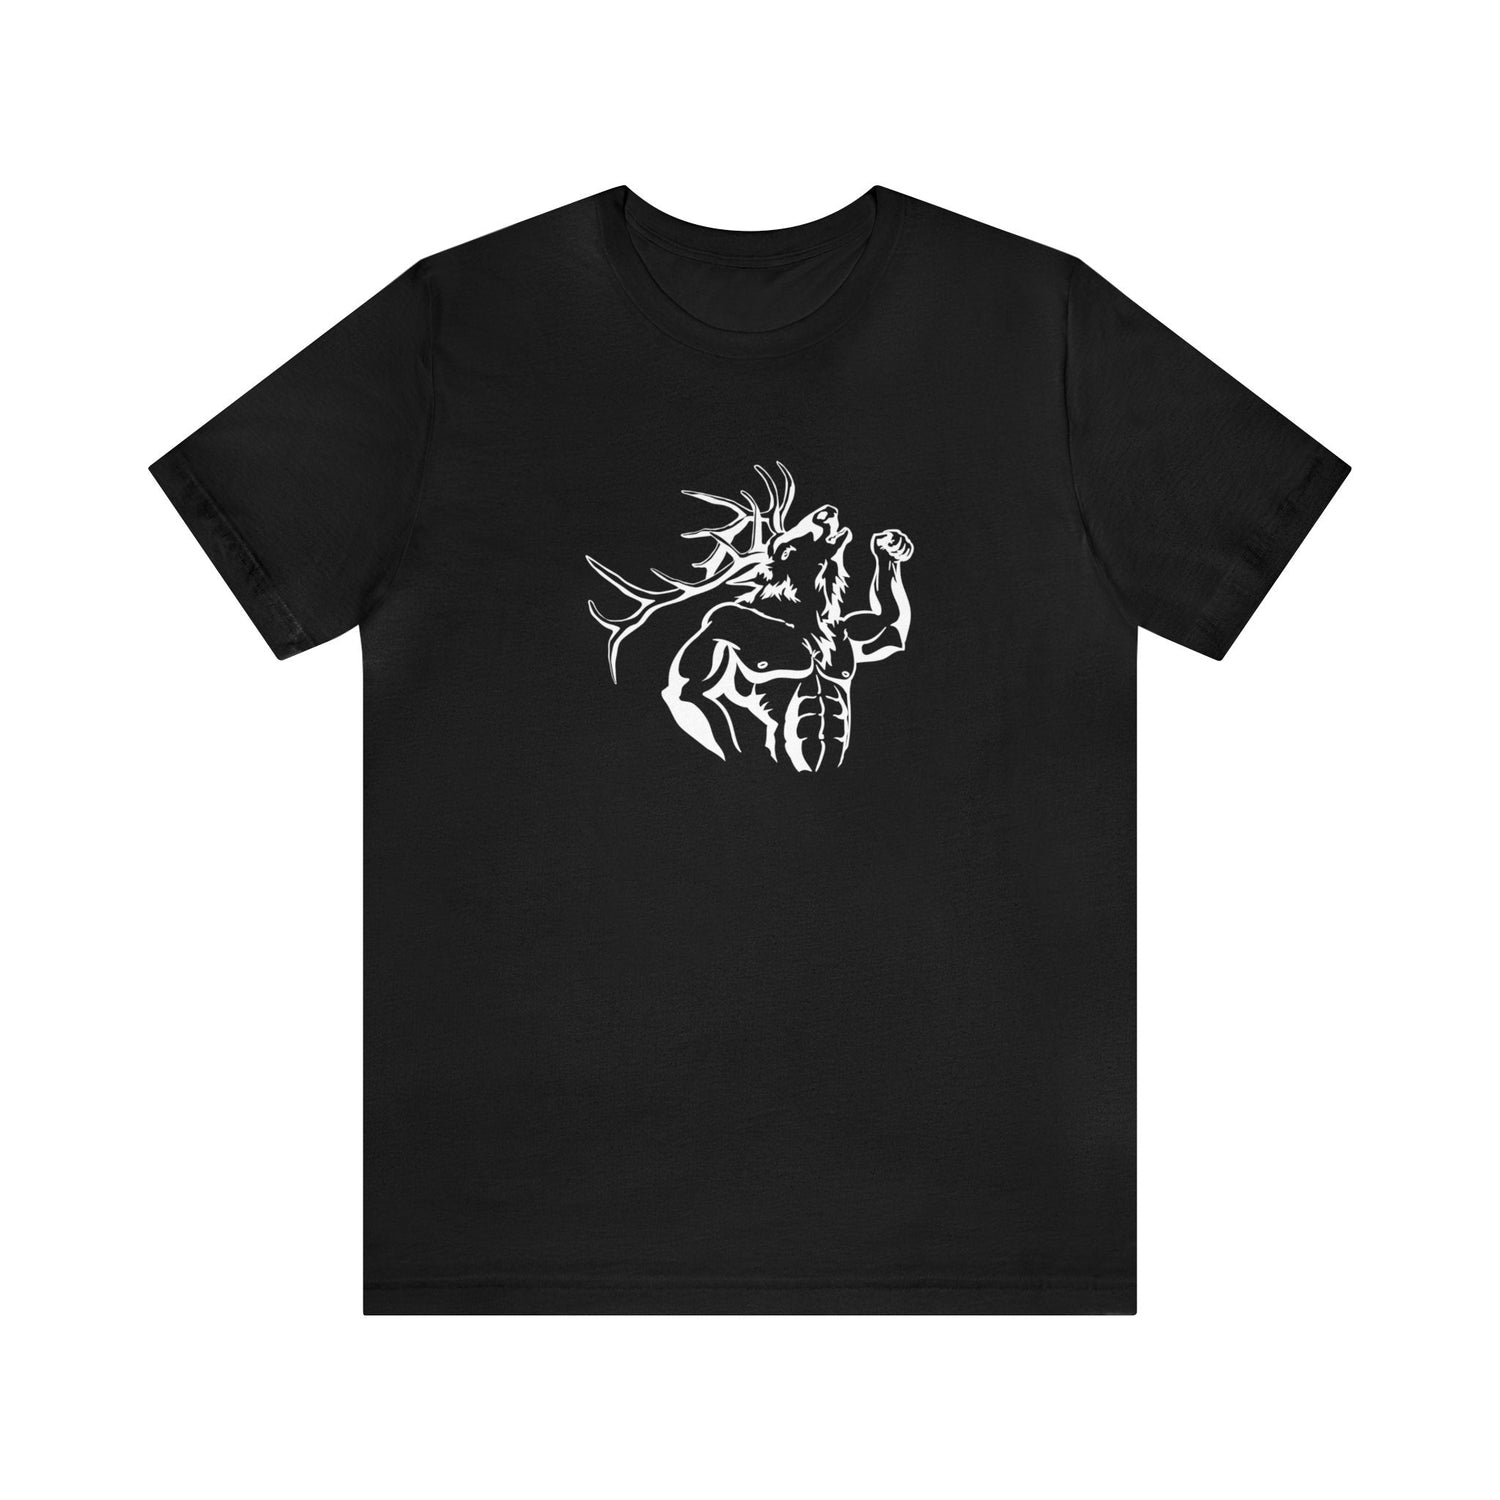 Western elk hunting t-shirt, color black, front design placement